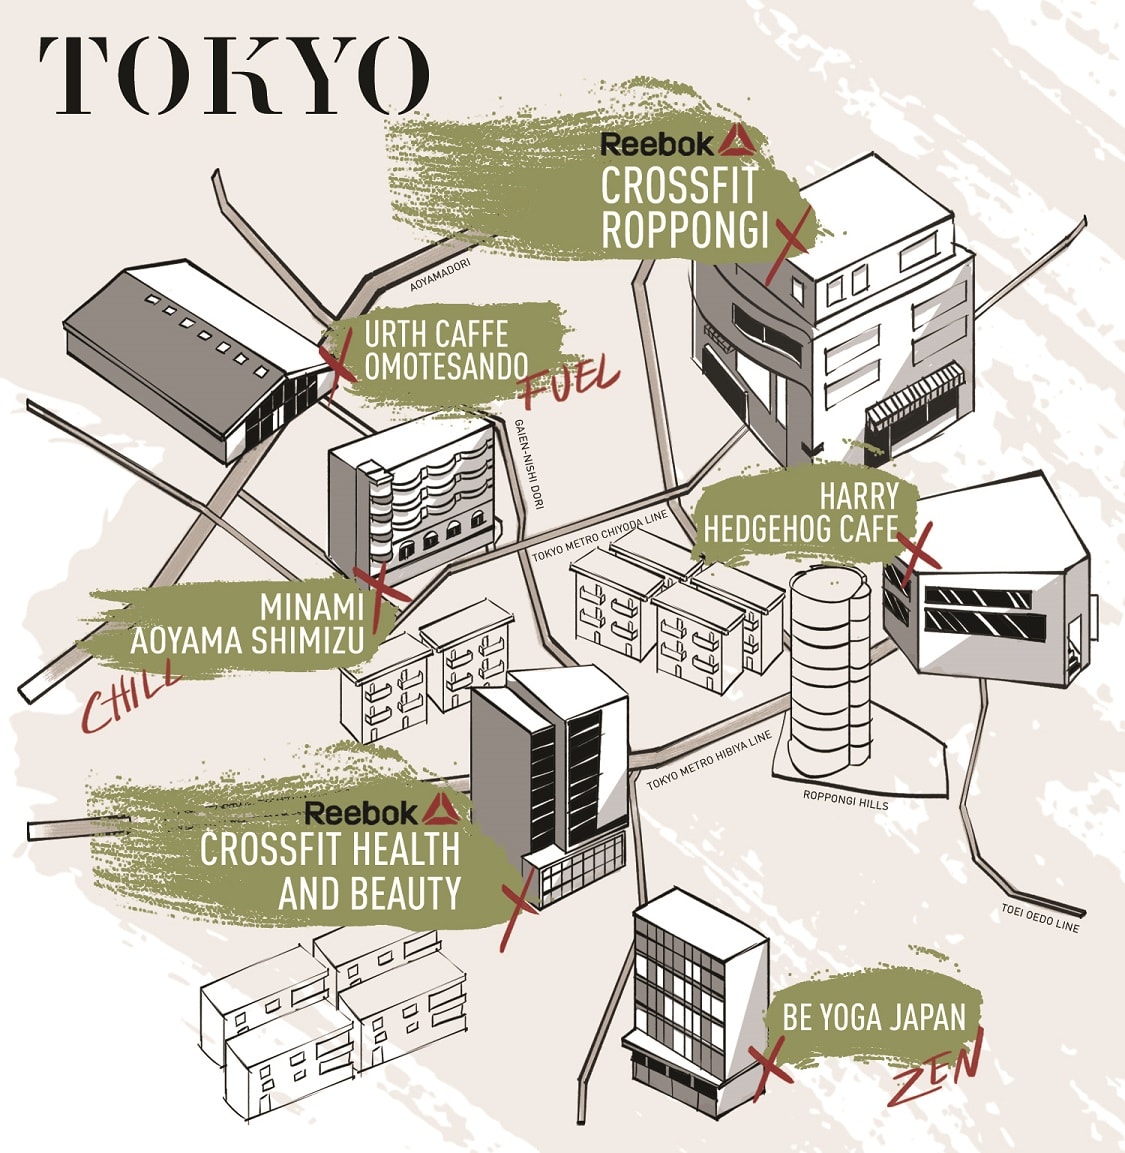 cf-travel-map-16-tokyo